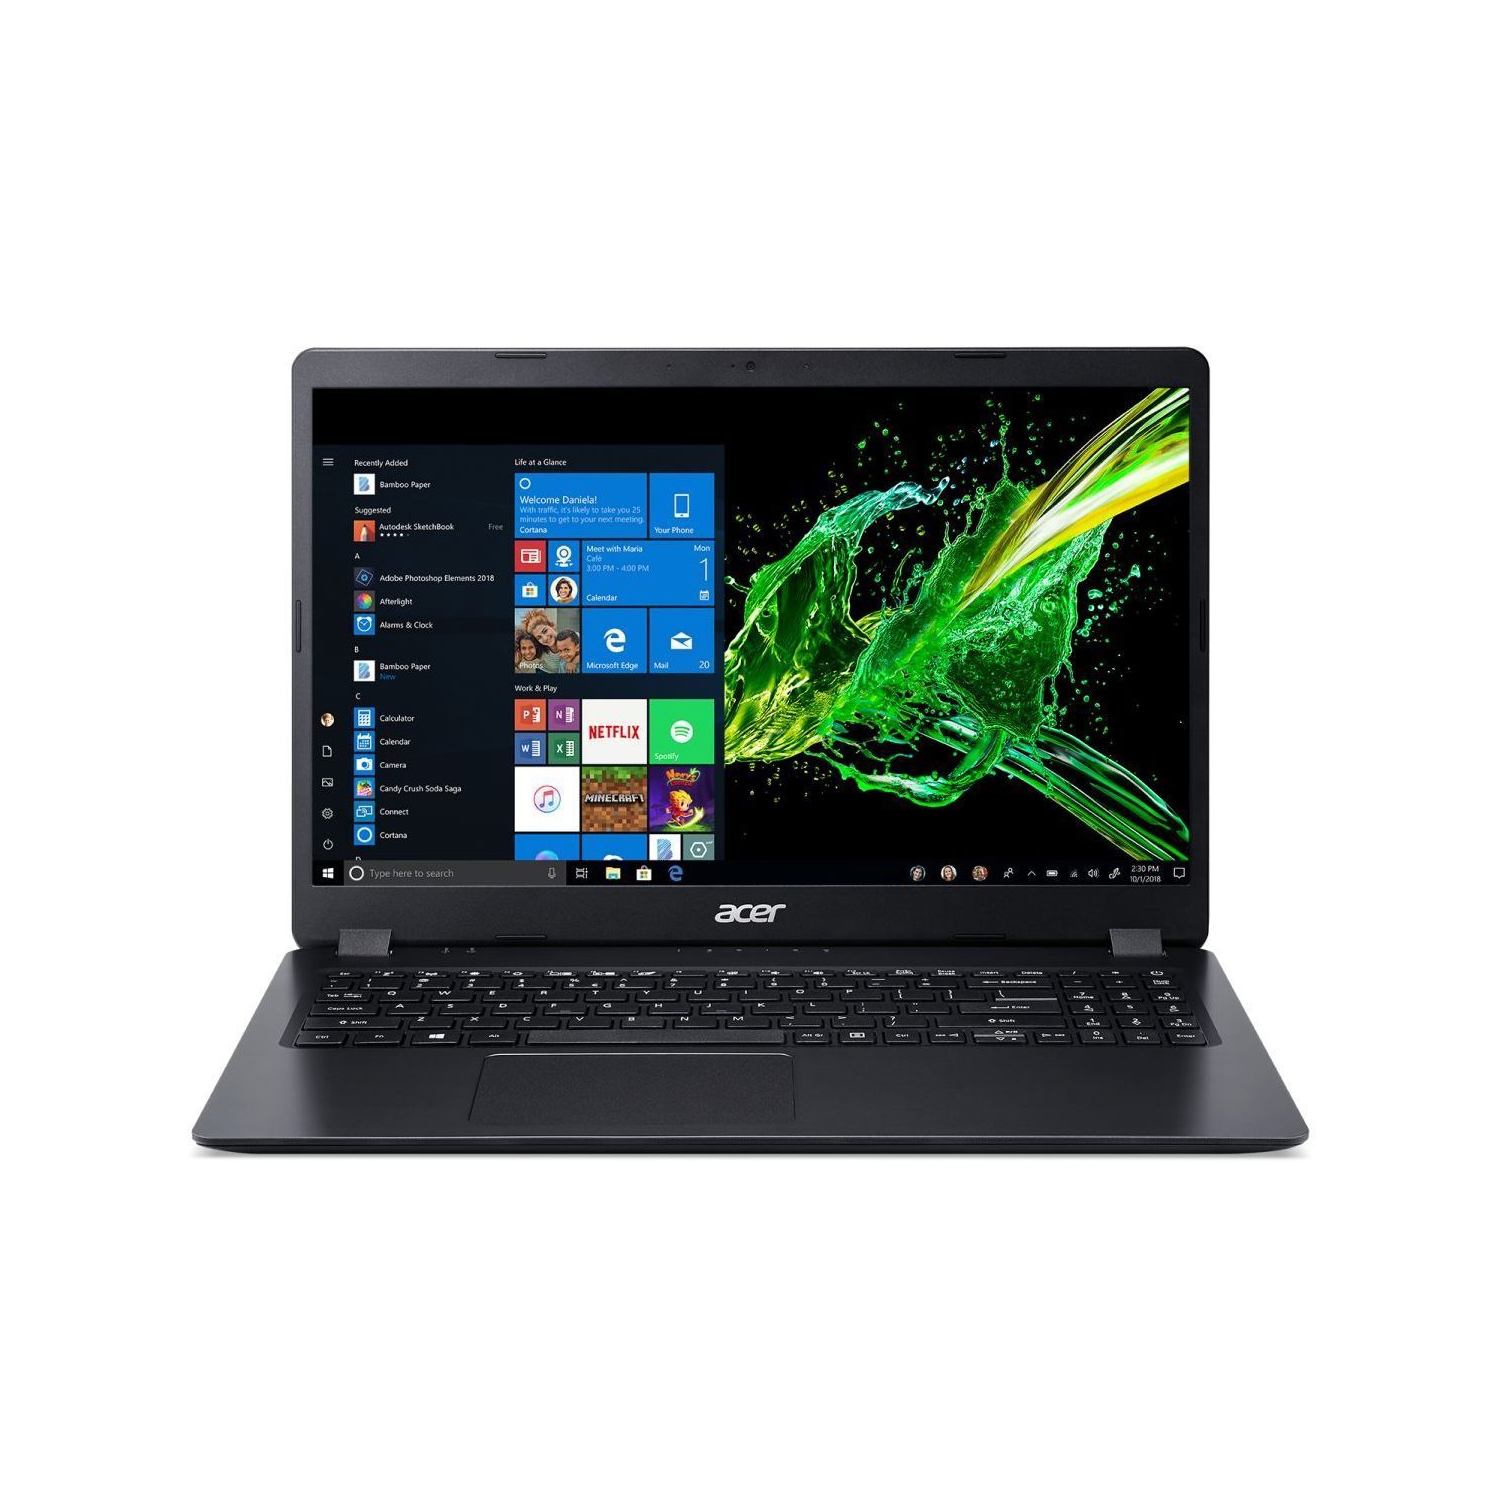 Refurbished (Excellent) - Acer Aspire 15.6" Laptop (Intel Celeron N4120/4Gb/128Gb SSD/Win 10 S) - Manufacturer ReCertified w/ 1 Year Warranty